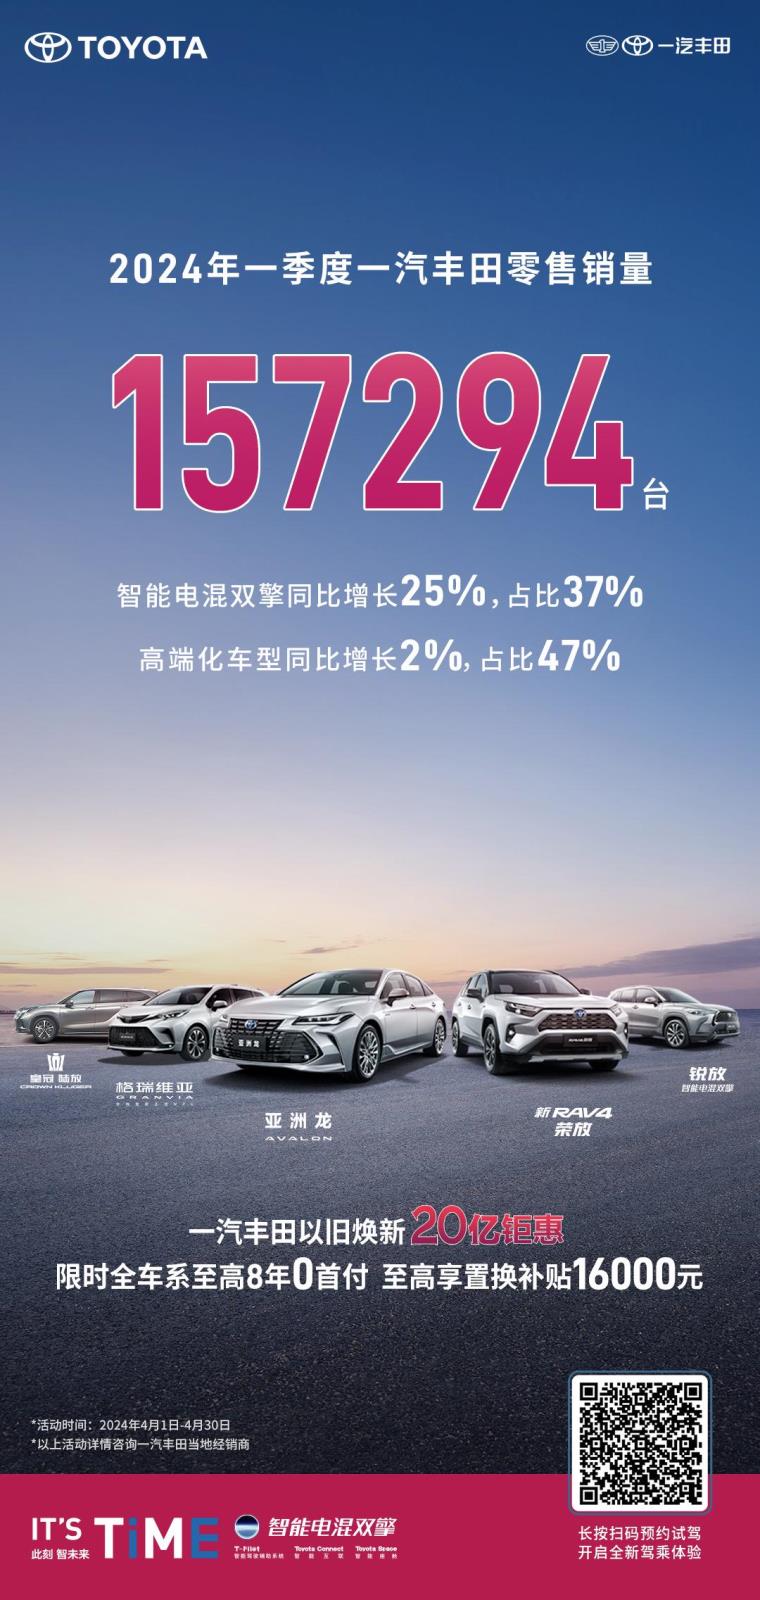 双擎车型销量占比37% 一汽丰田一季度销量持续增长